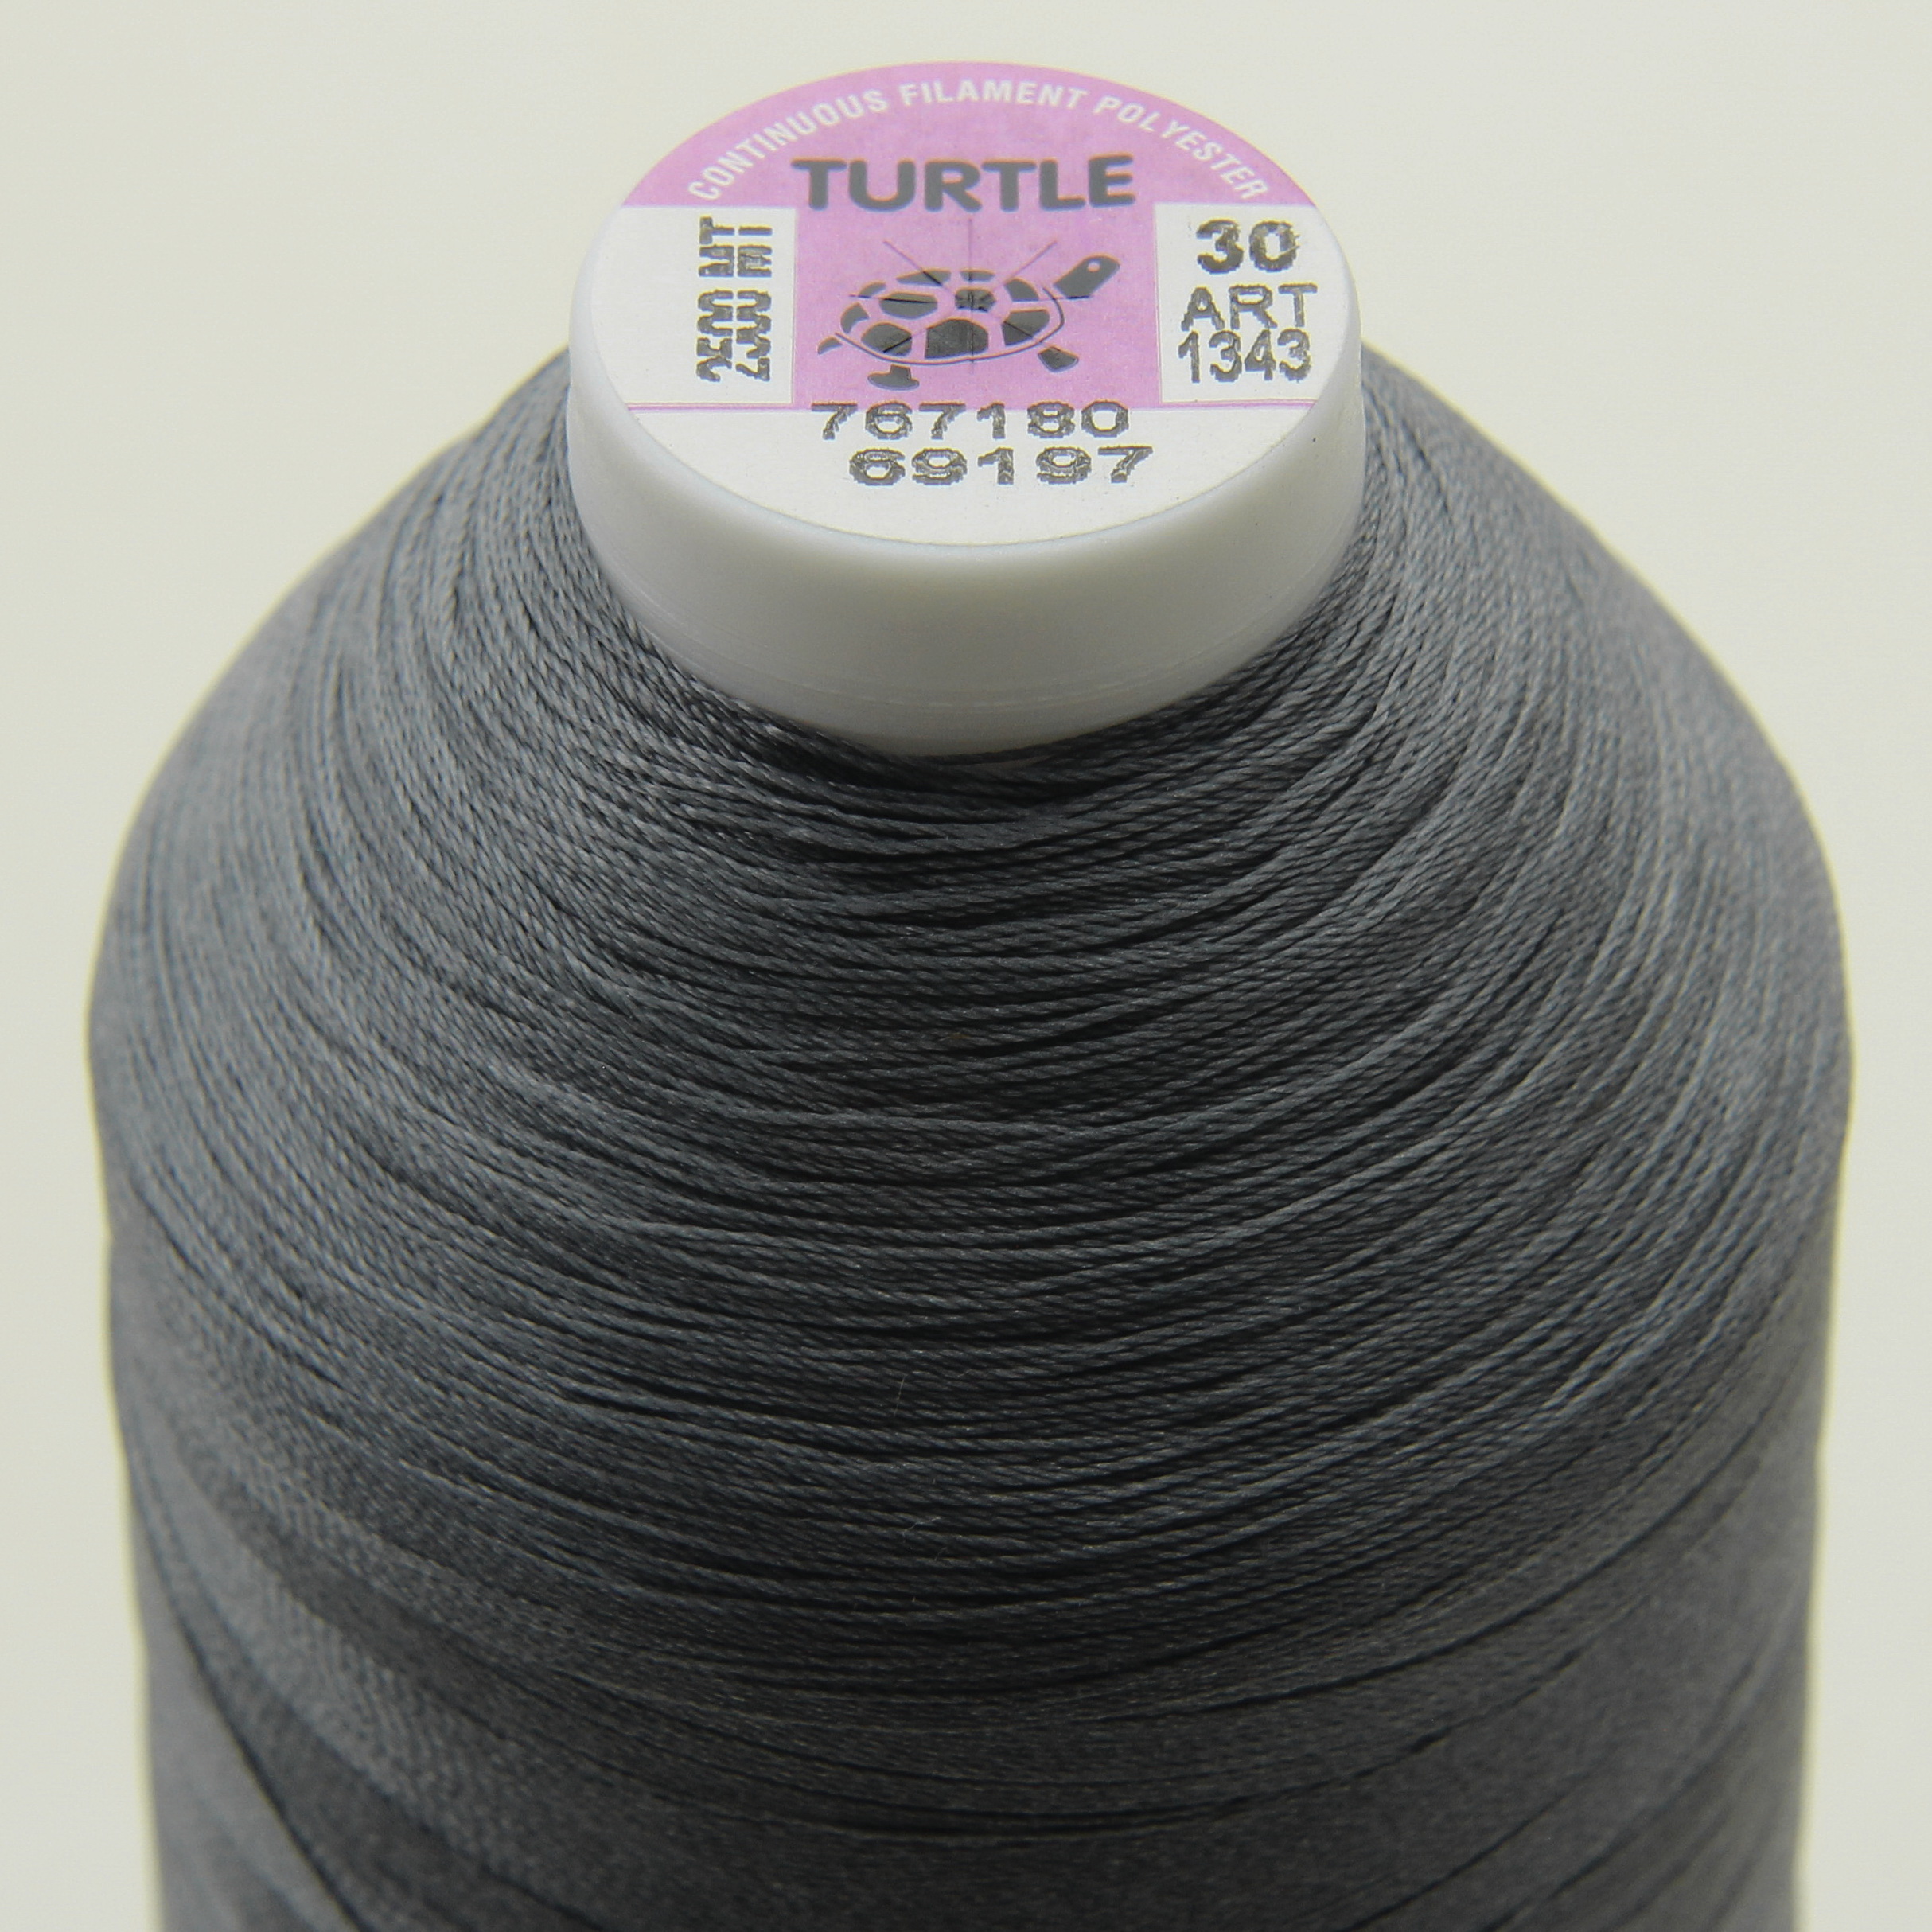 Нить TURTLE (Турция) №30 69197 для оверлока, цвет серый, длина 2500м. детальная фотка